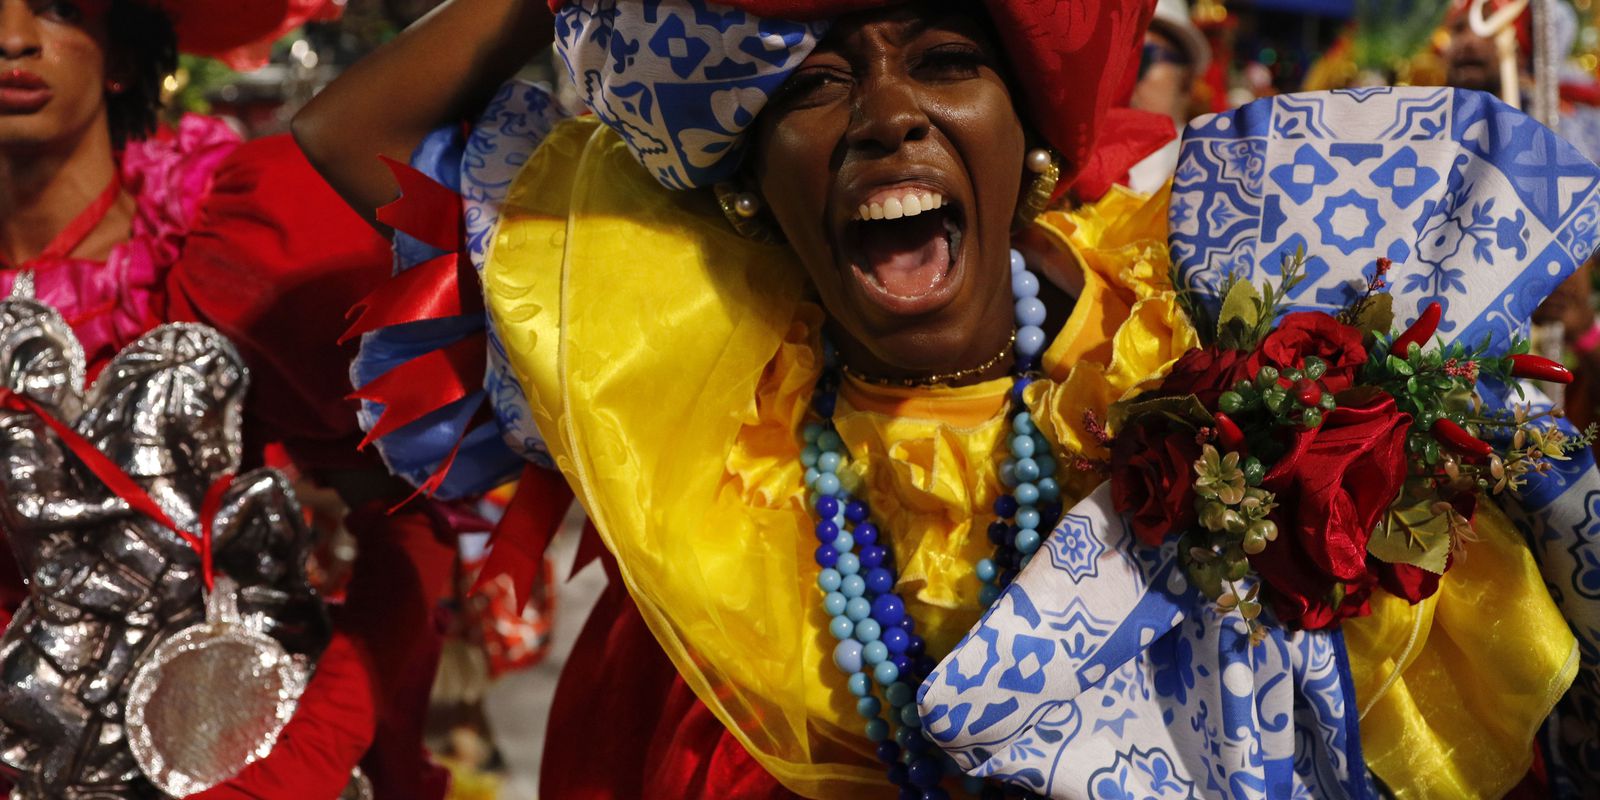 Ingressos para desfile das campeãs do carnaval do Rio estão esgotados